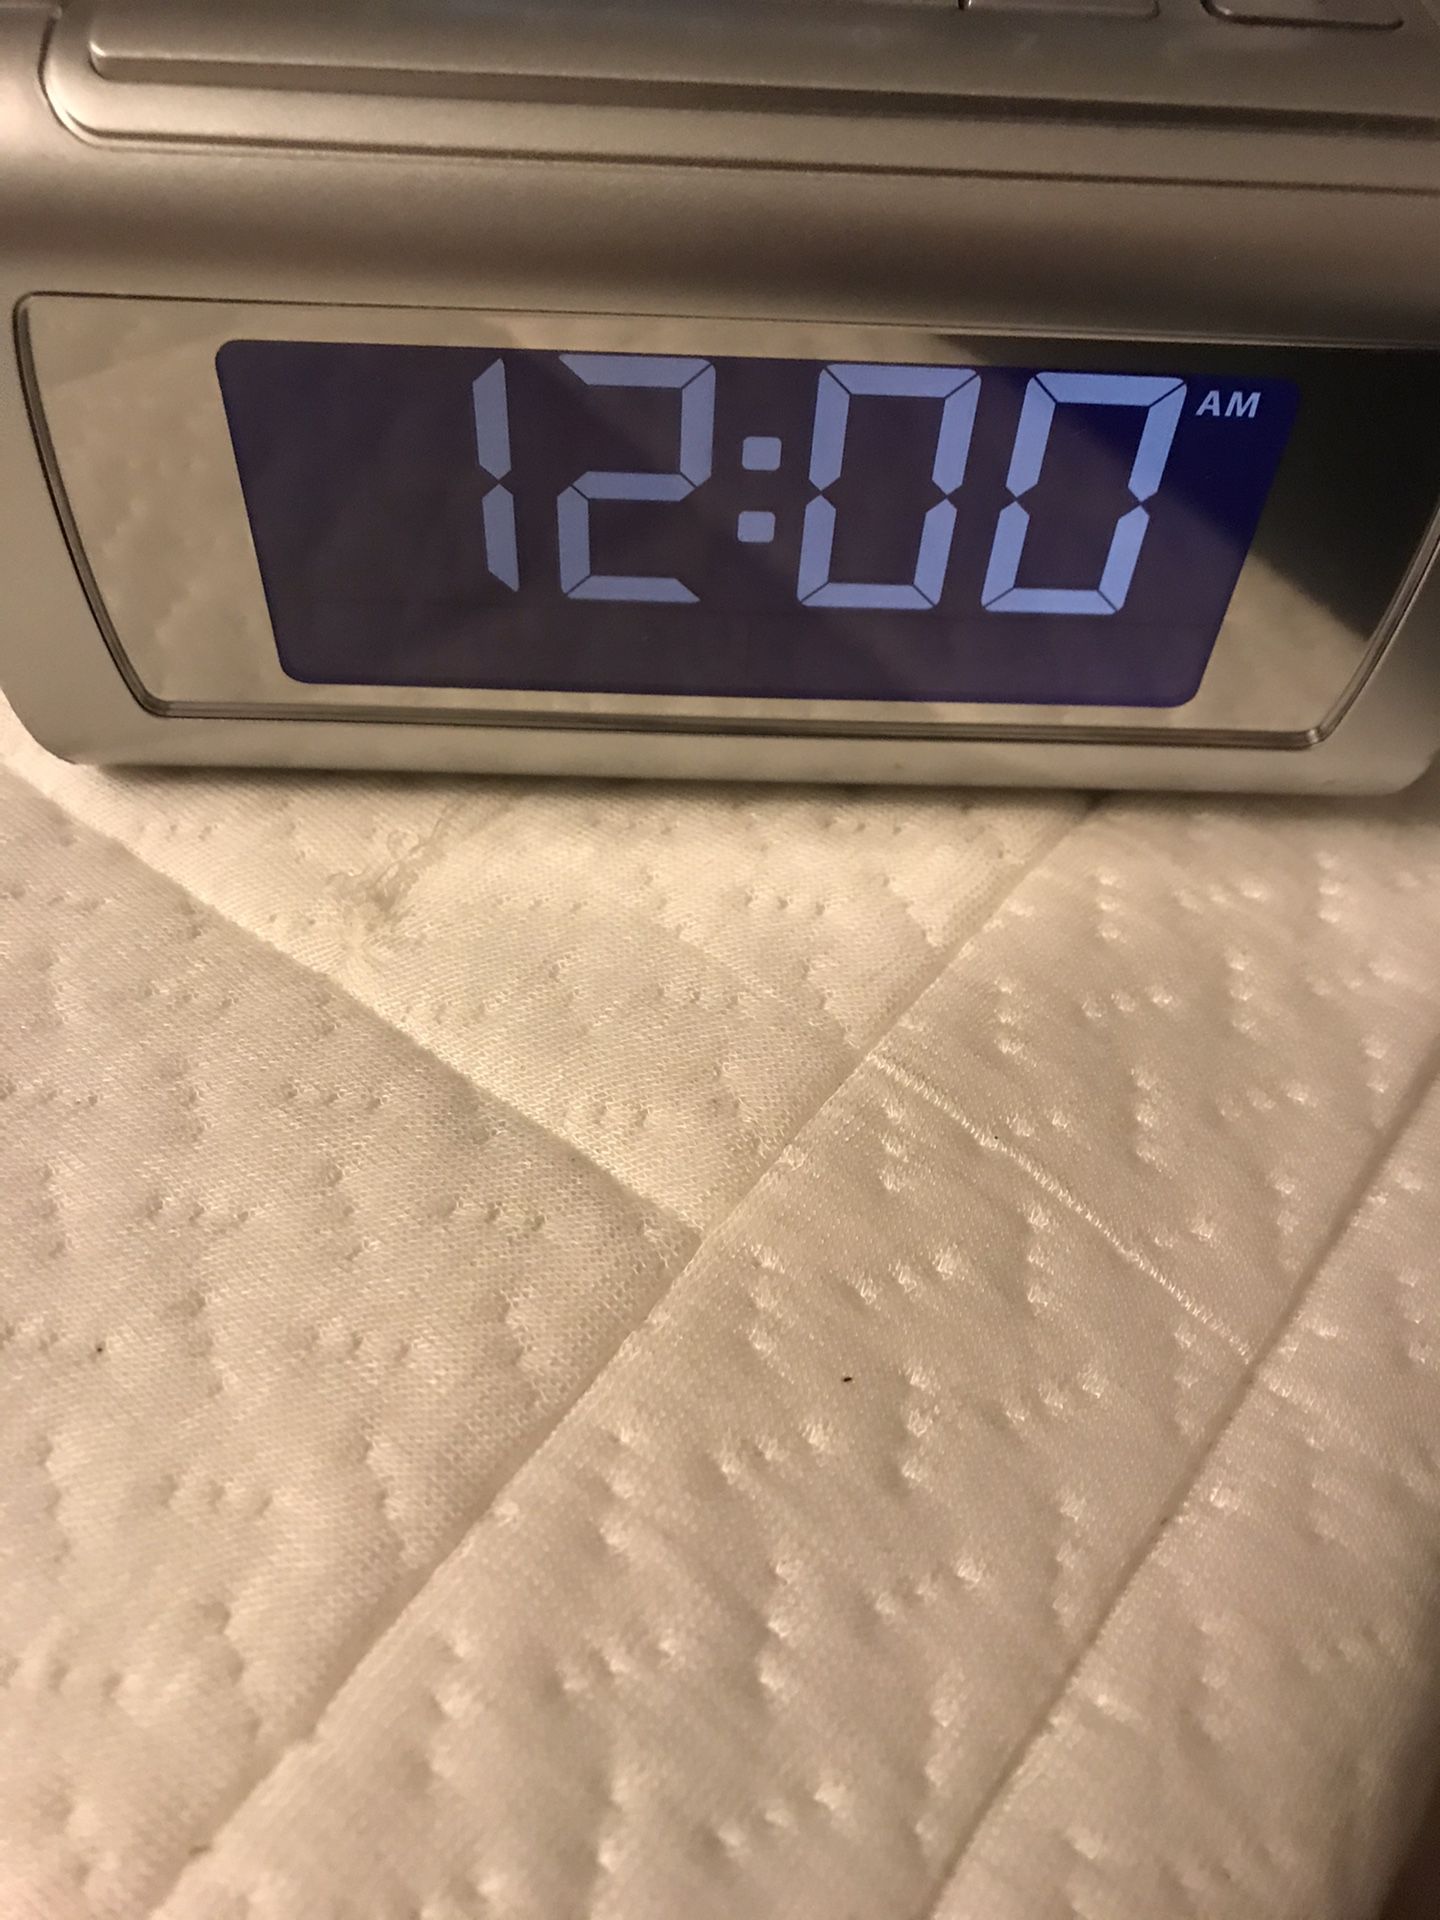 Alarm clock. $10